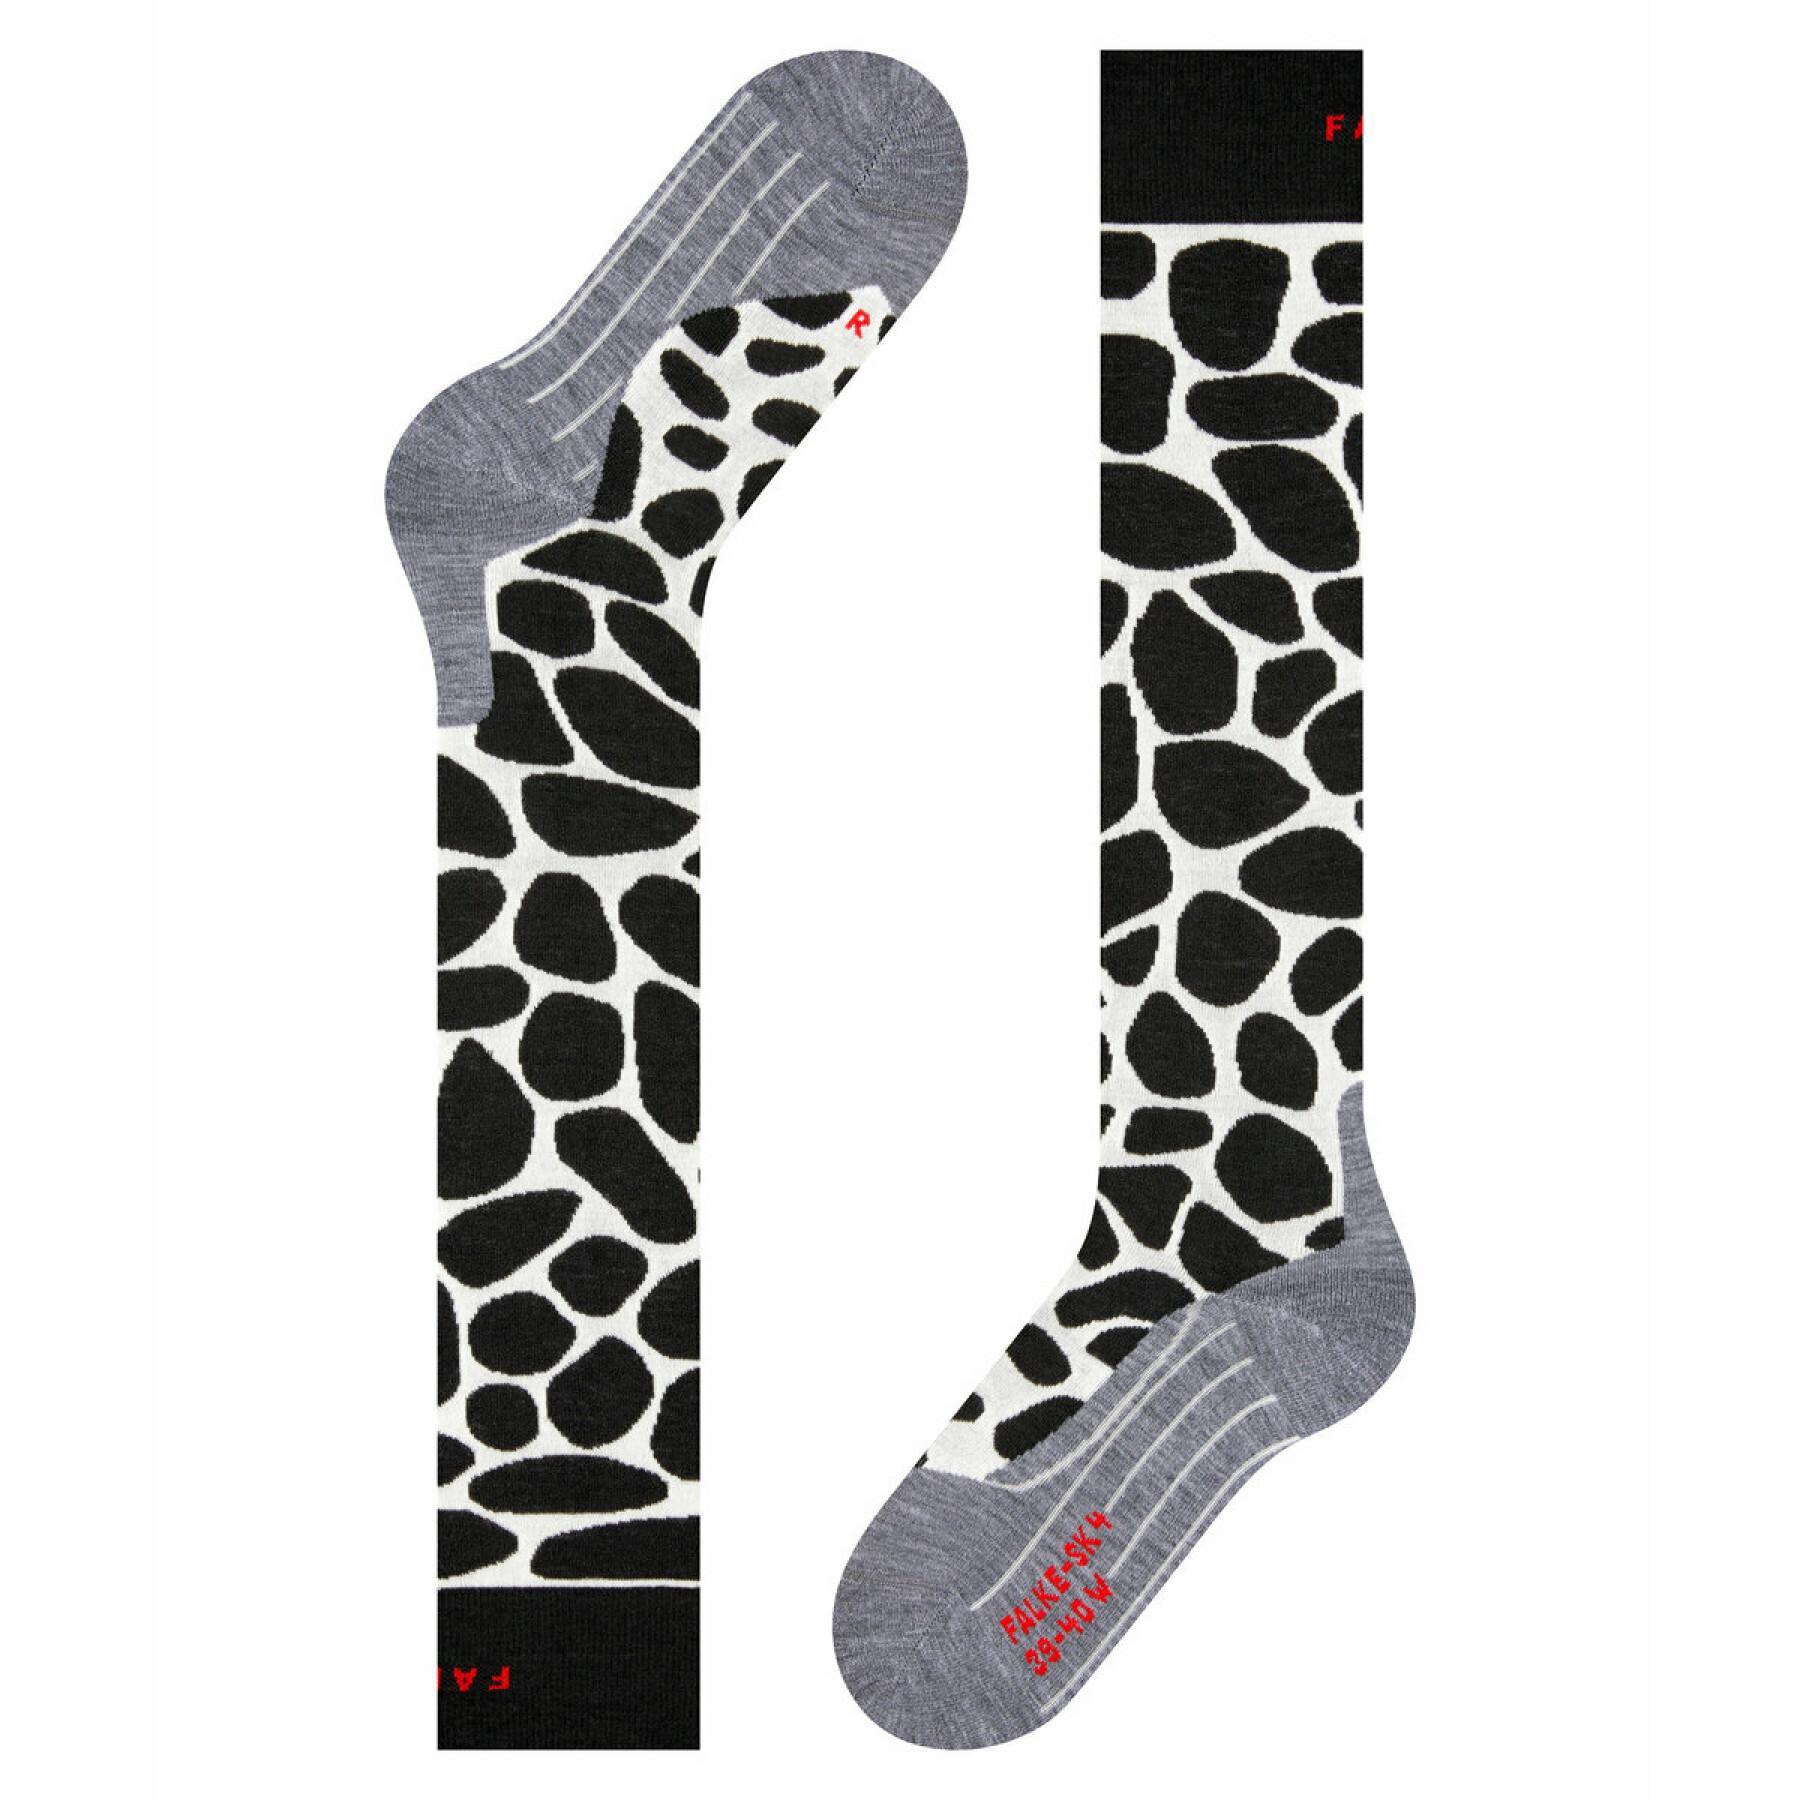 Women's high socks Falke SK4 Girafe